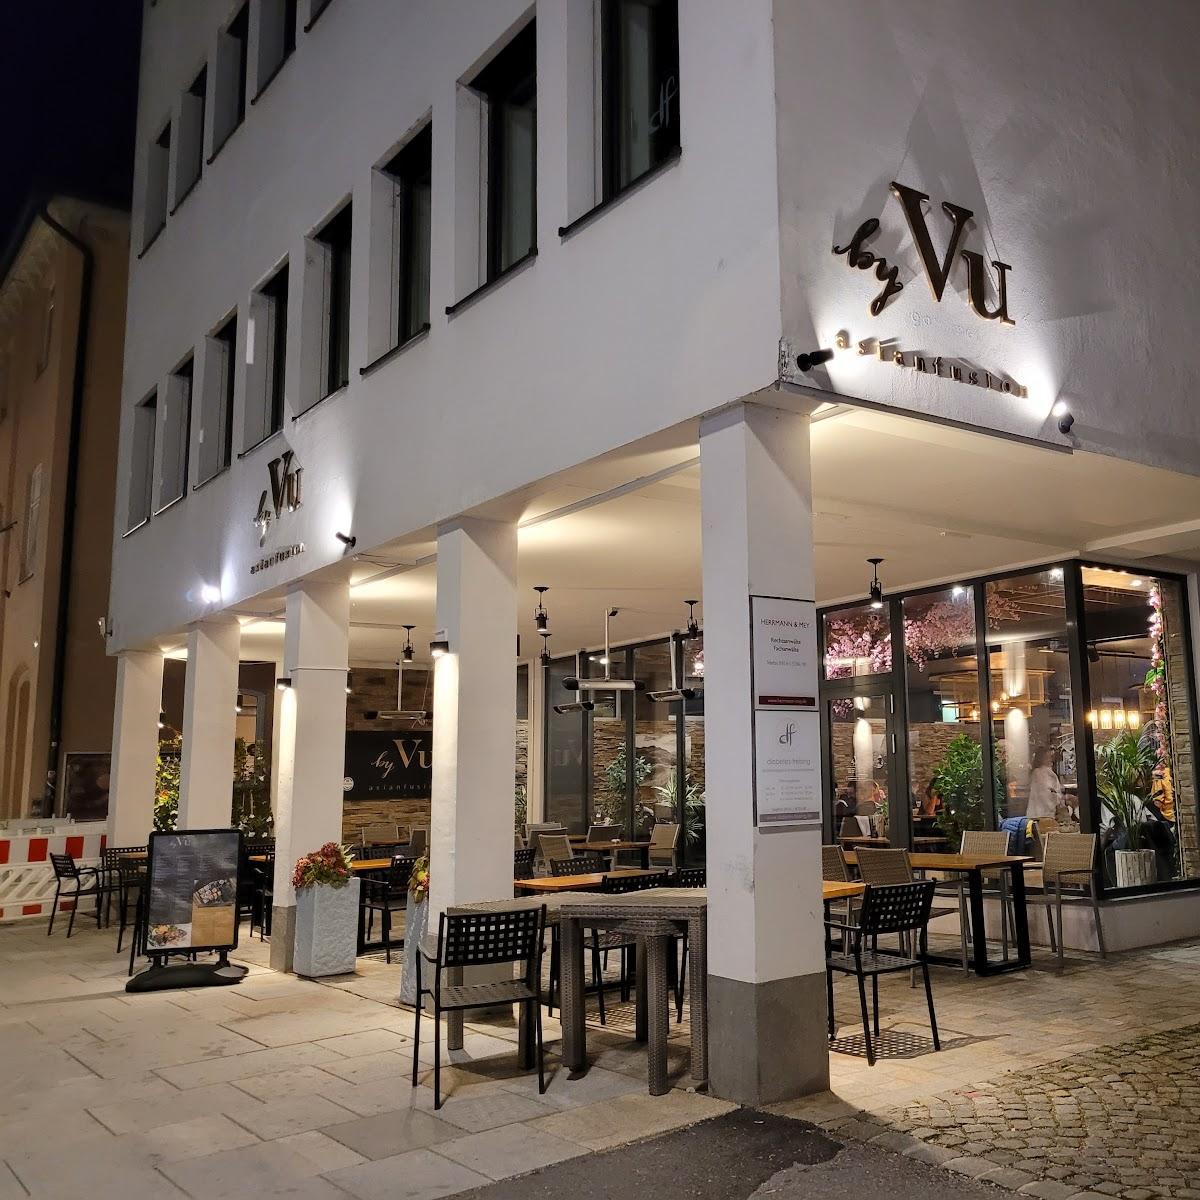 Restaurant "By Vu" in Freising